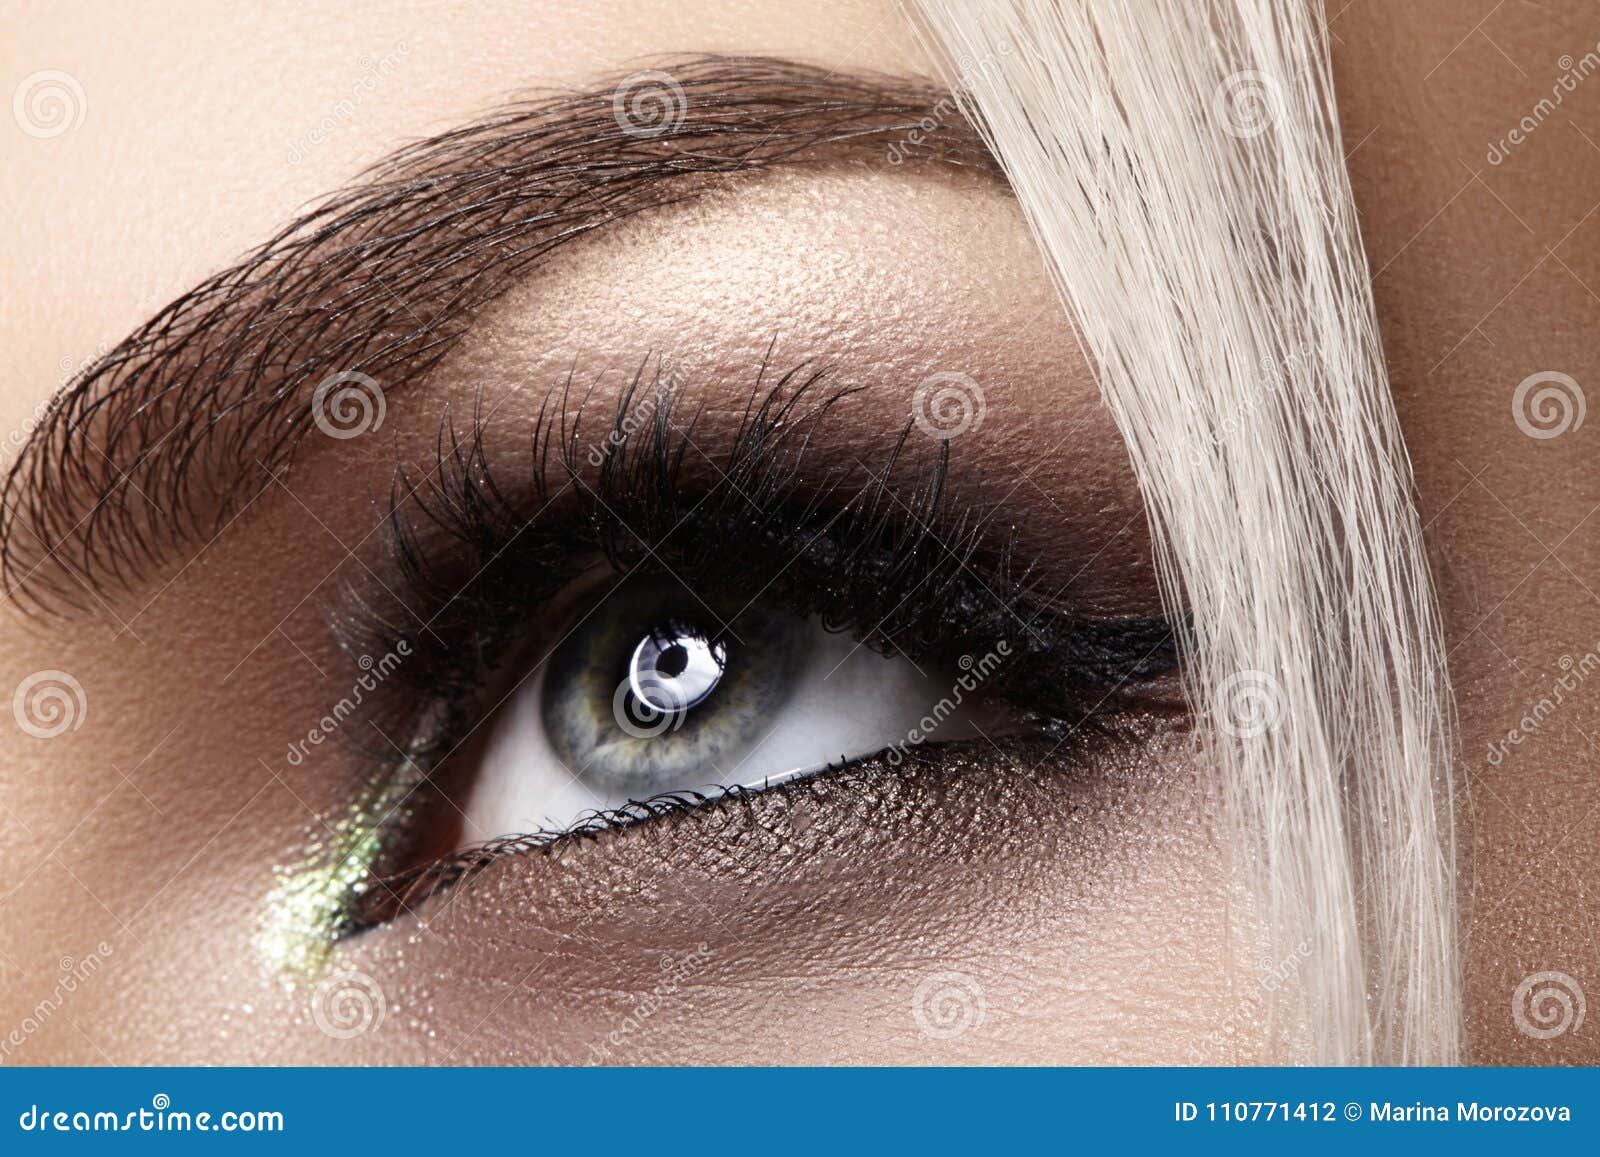 Beautiful Female Eye With Extreme Long Eyelashes Black Liner